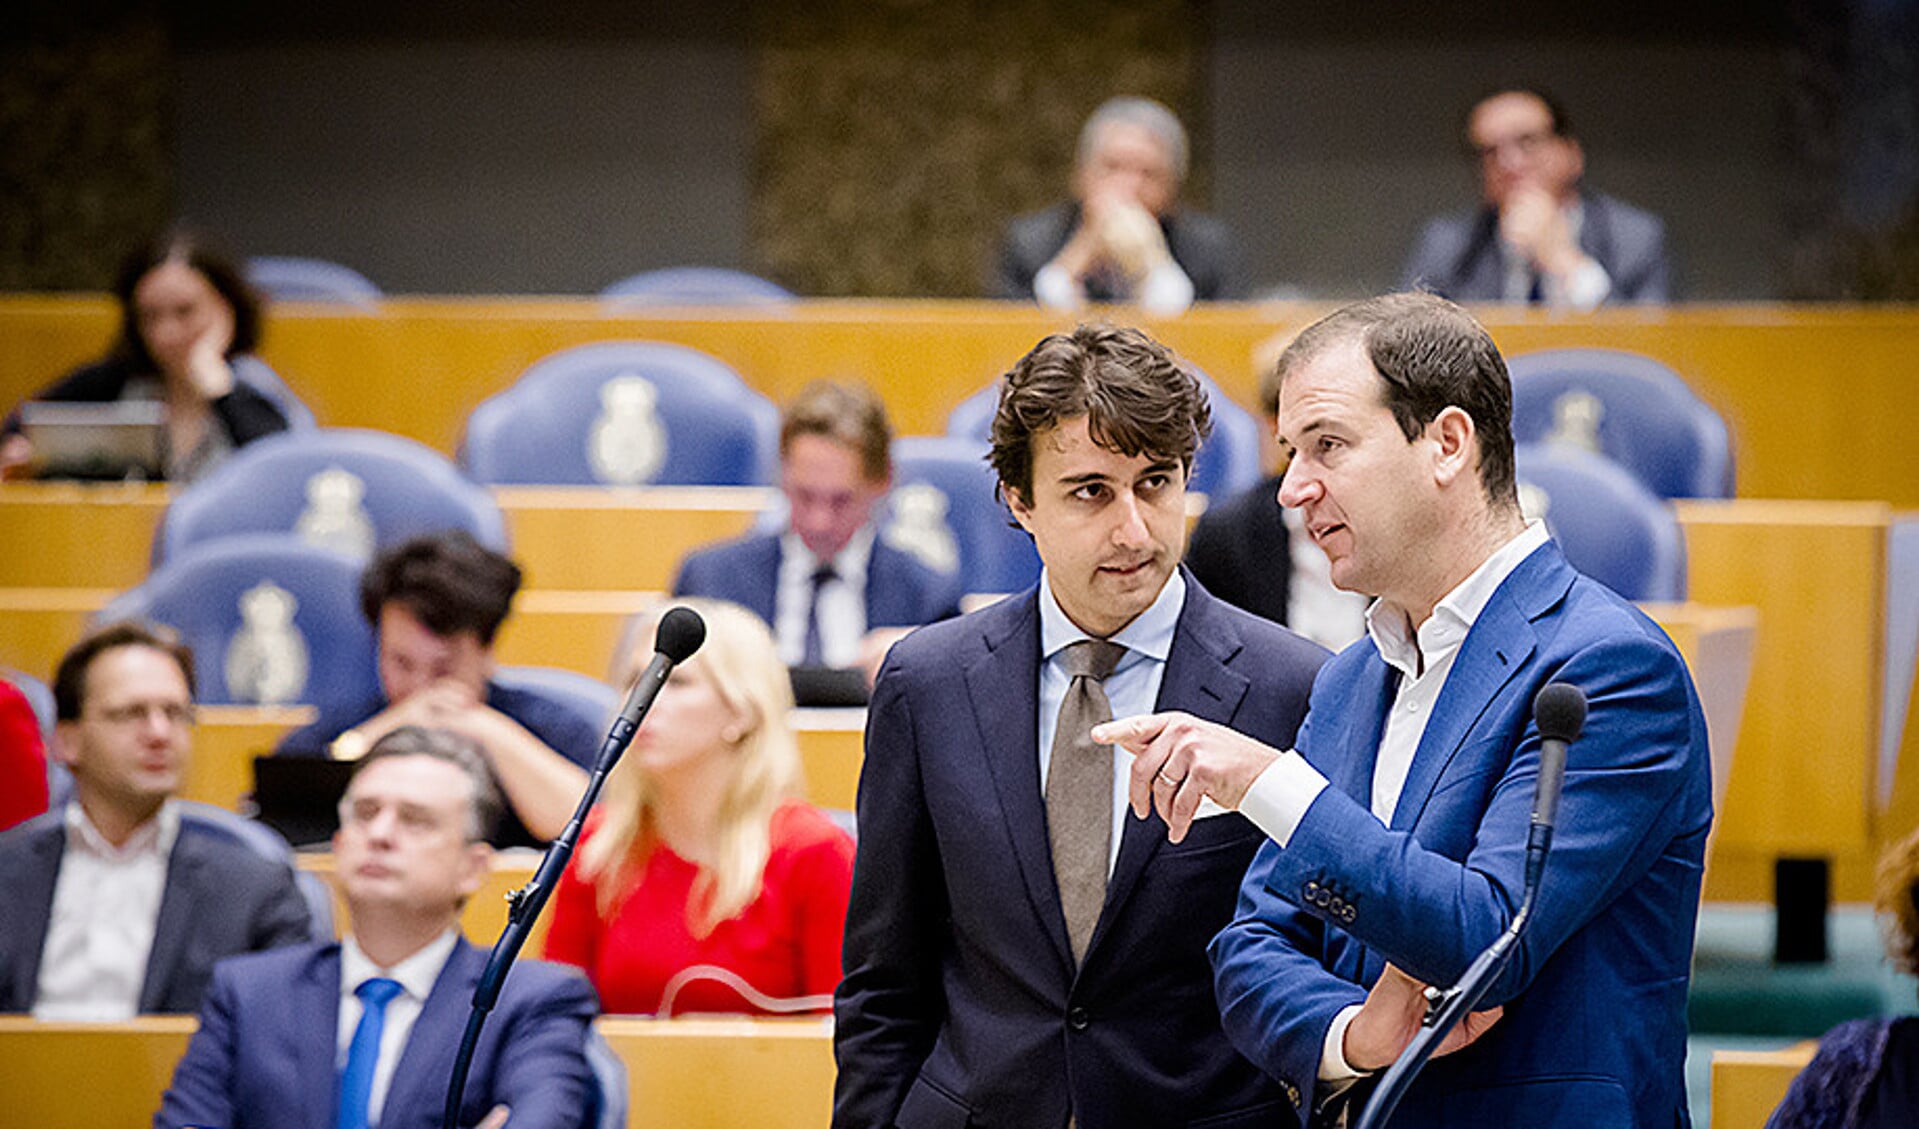 Jesse Klaver (GroenLinks) en Lodewijk Asscher (PvdA) tijdens het Tweede Kamerdebat over het eindverslag van de informatie.